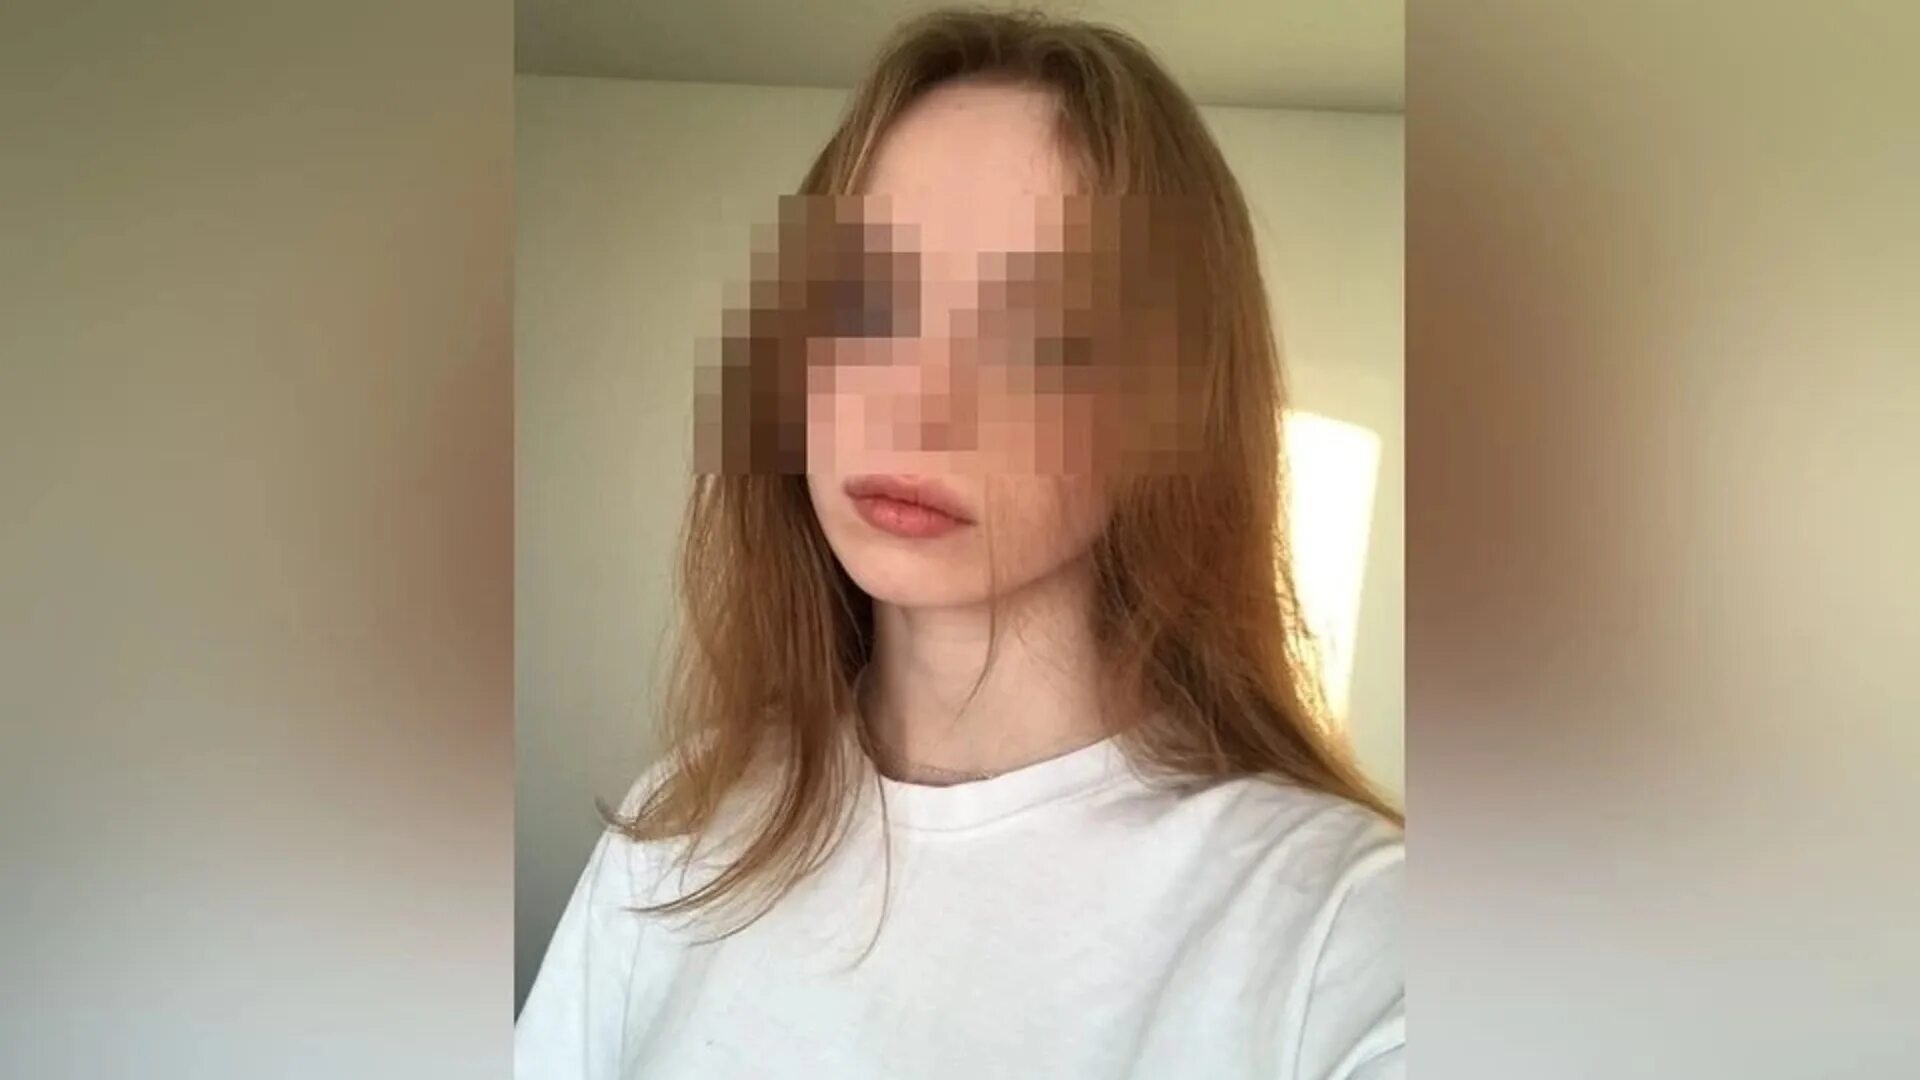 Хочет 25 летнюю. Убитая 17 летняя девушка в Новосибирске. 19 Летняя девушка. Убийство в Новосибирске девушки 17-летней.